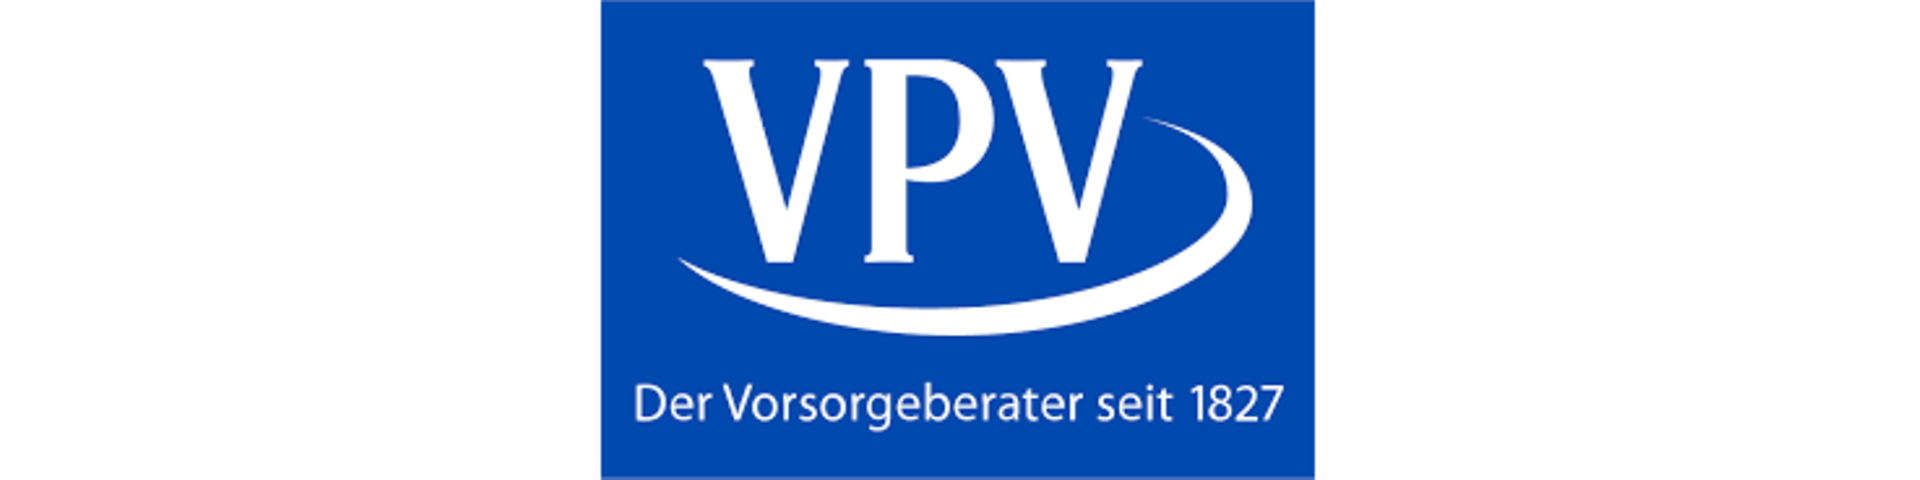 Logo_VPV